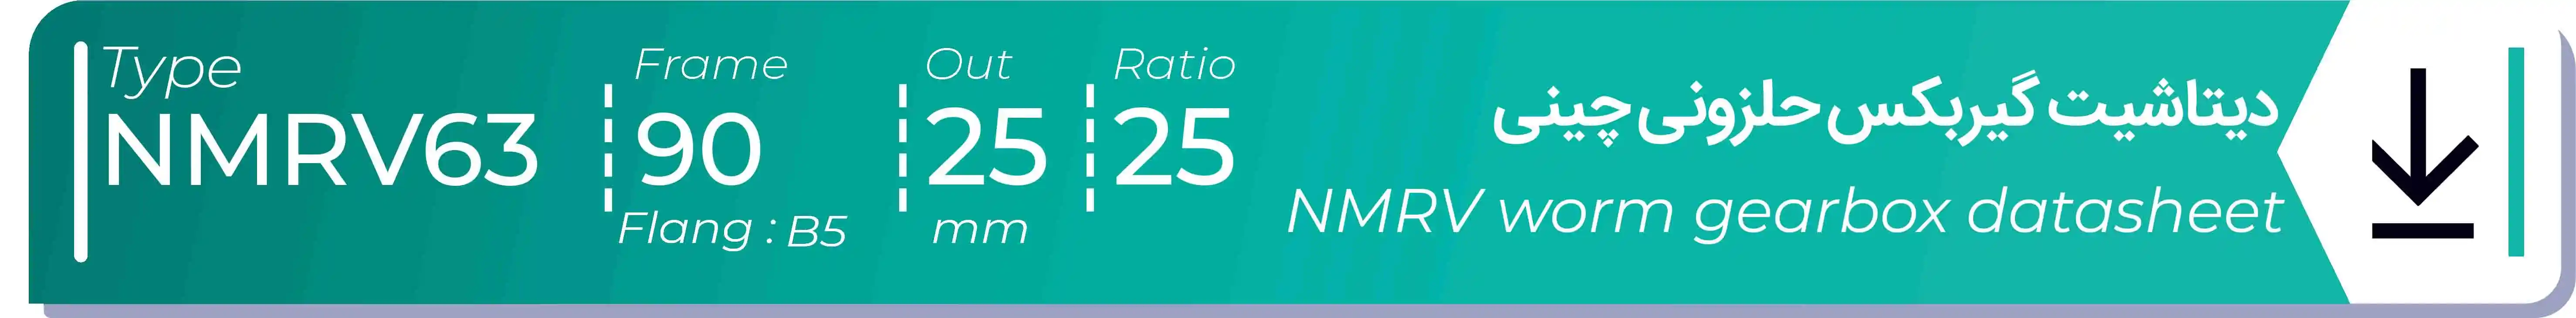  دیتاشیت و مشخصات فنی گیربکس حلزونی چینی   NMRV63  -  با خروجی 25- میلی متر و نسبت25 و فریم 90